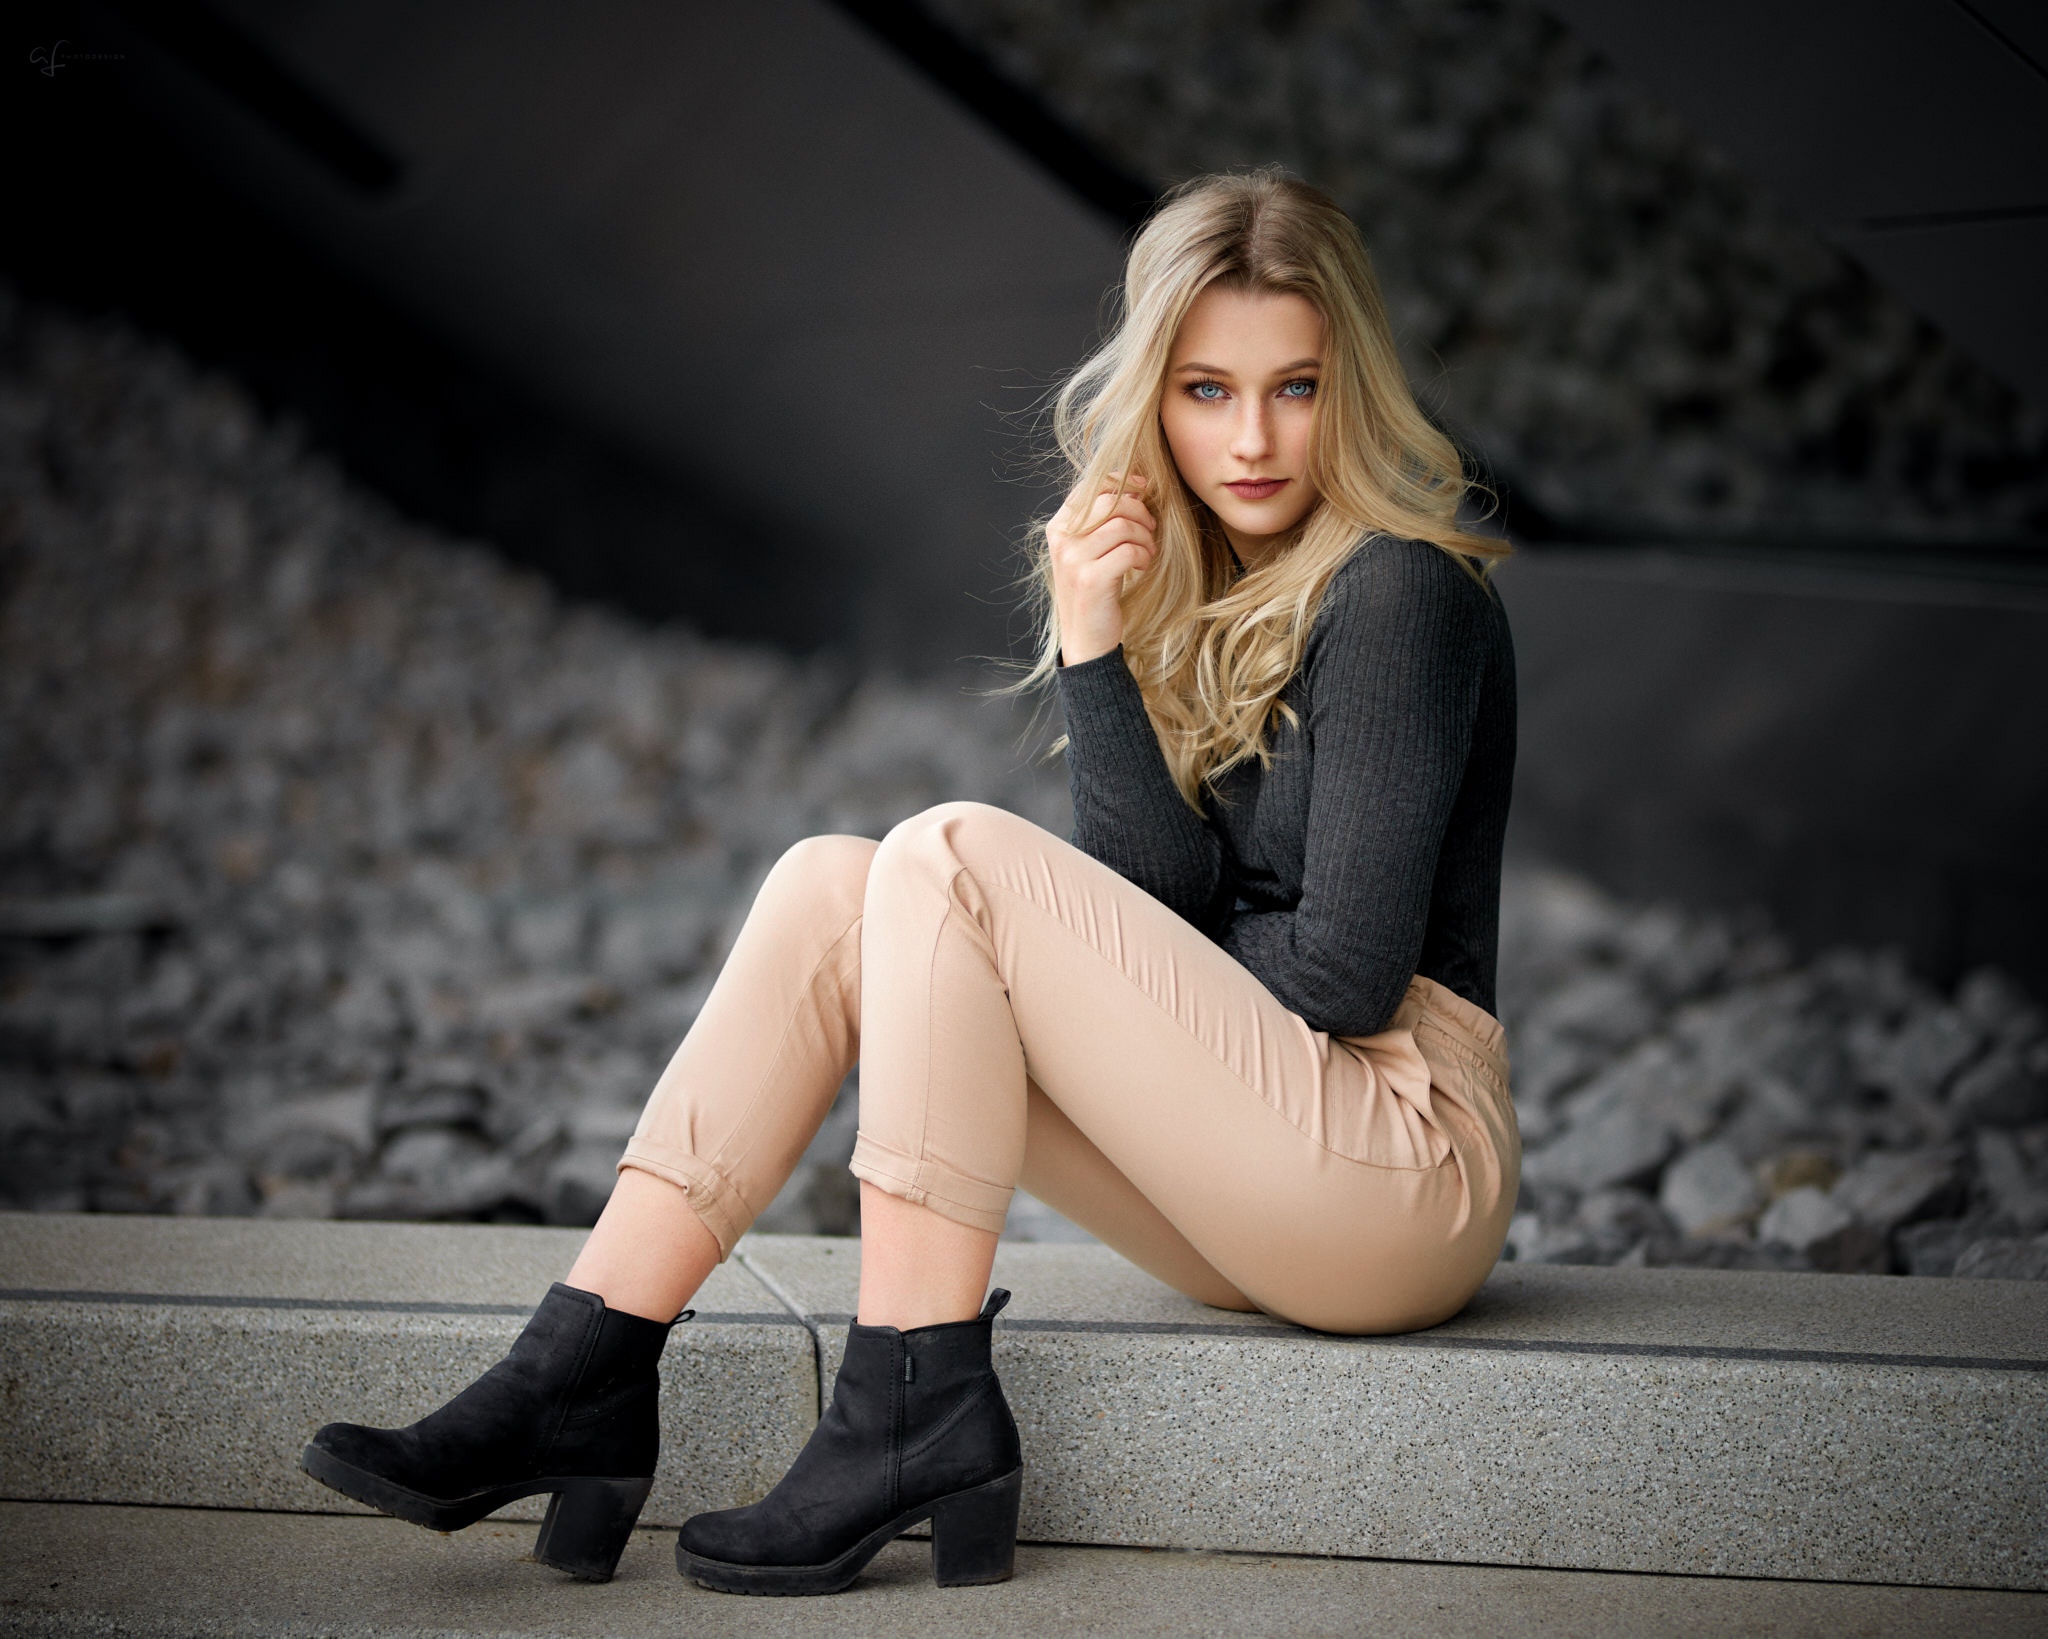 Women Sitting Blonde Portrait Shoes Alex Fetter 2048x1639